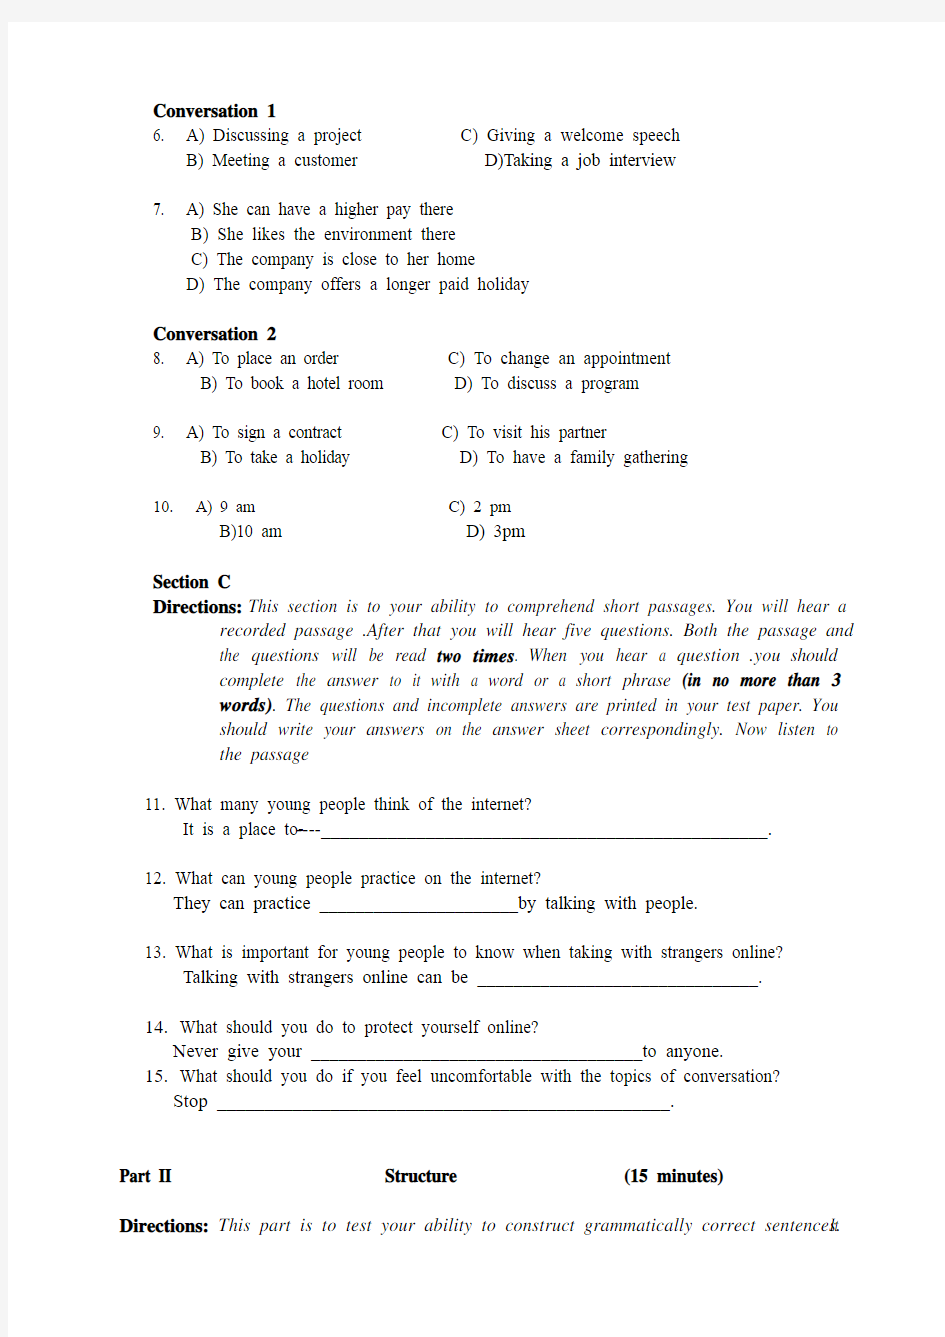 2012年12月高等学校英语应用能力考试(A)级试题及答案